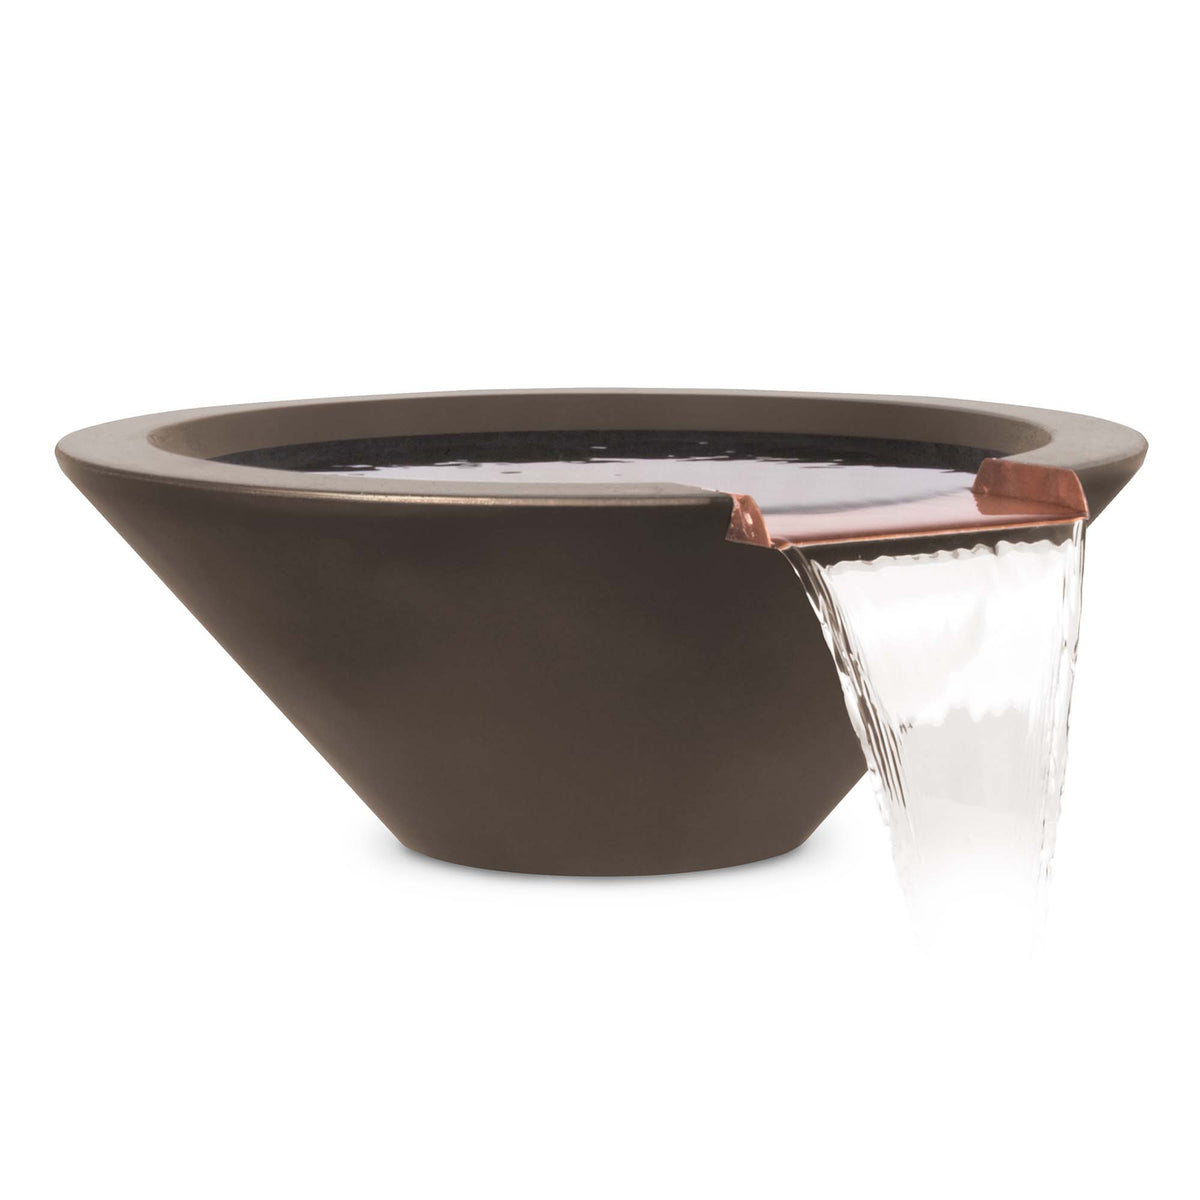 The Outdoor Plus Cazo GFRC Concrete Round Water Bowl